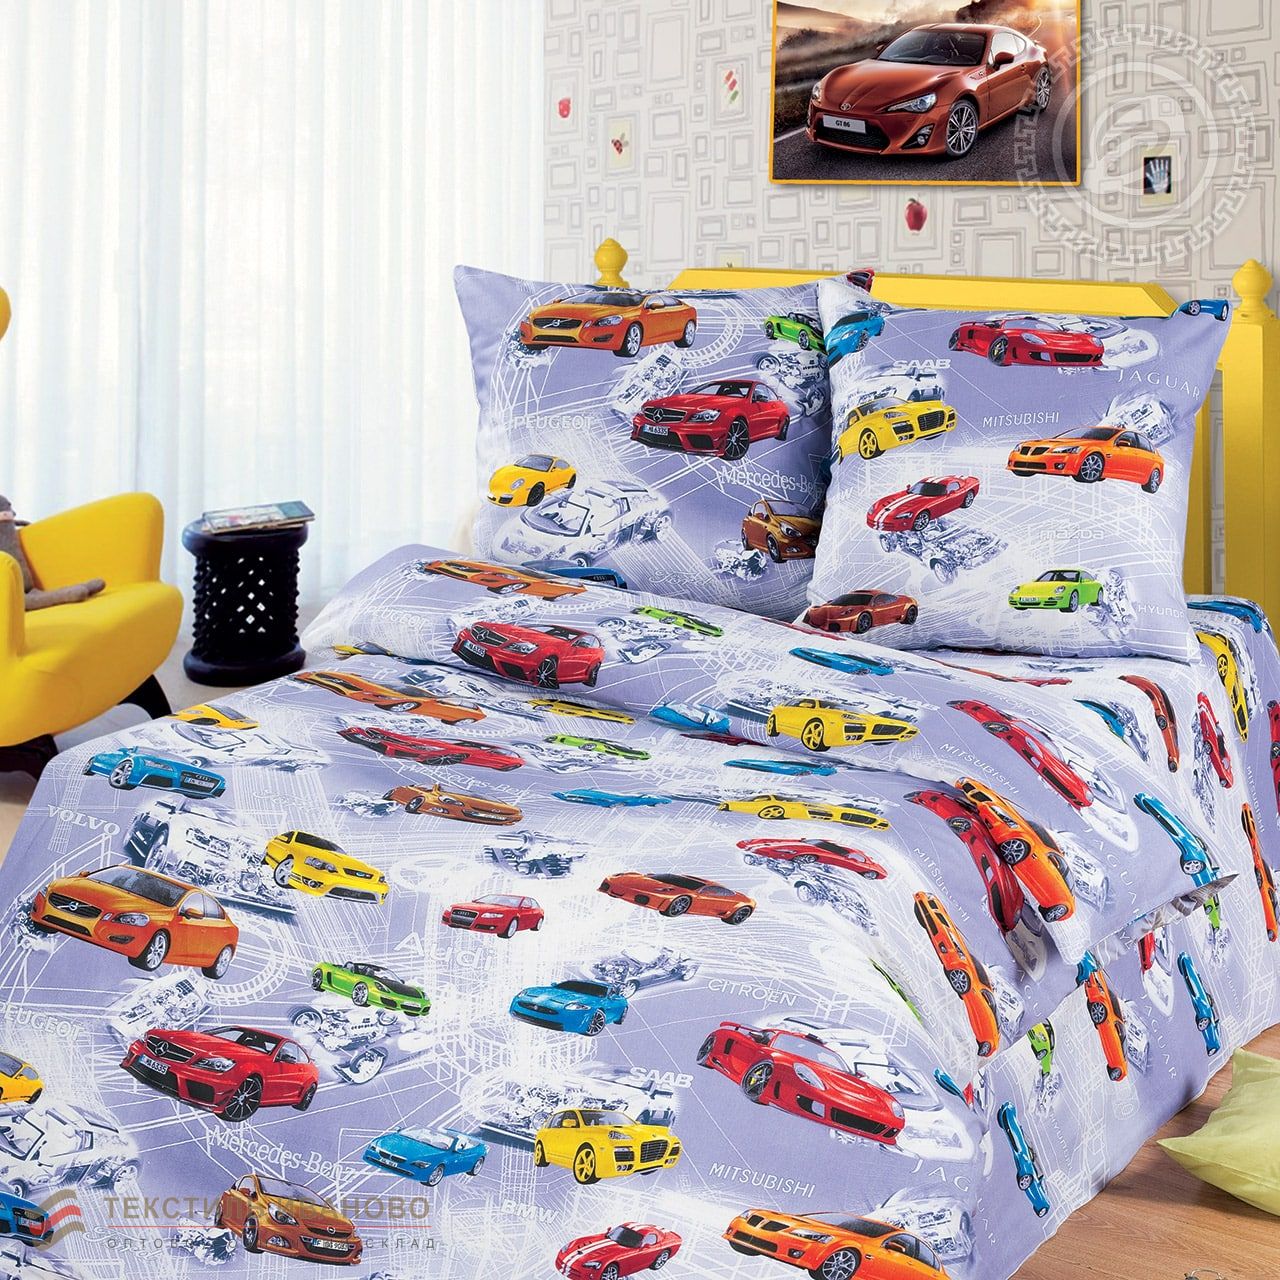  Комплект детского постельного белья АвтоМир бязь 150, фото 1 